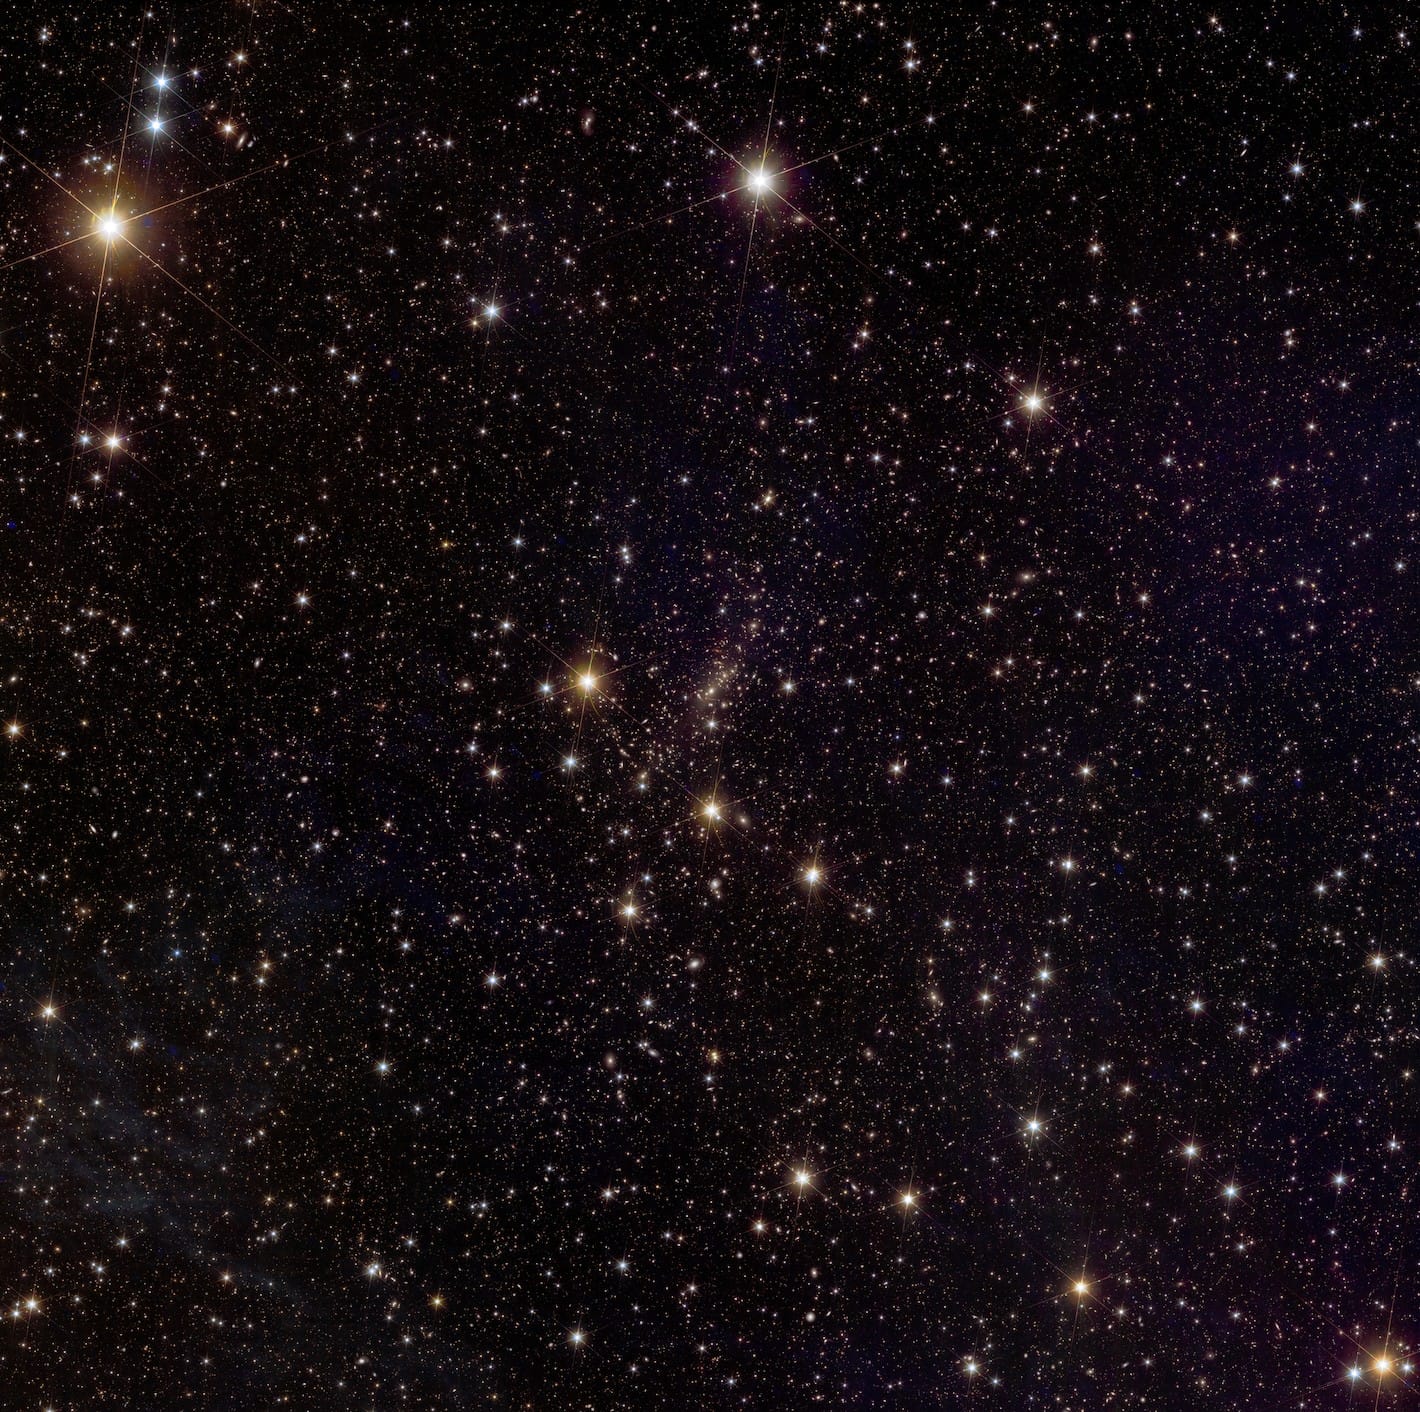 تكنولوجيا  - تلسكوب "الكون المظلم" فى أوروبا يشارك البيانات العلمية الأولى والصور الكونية الجديدة